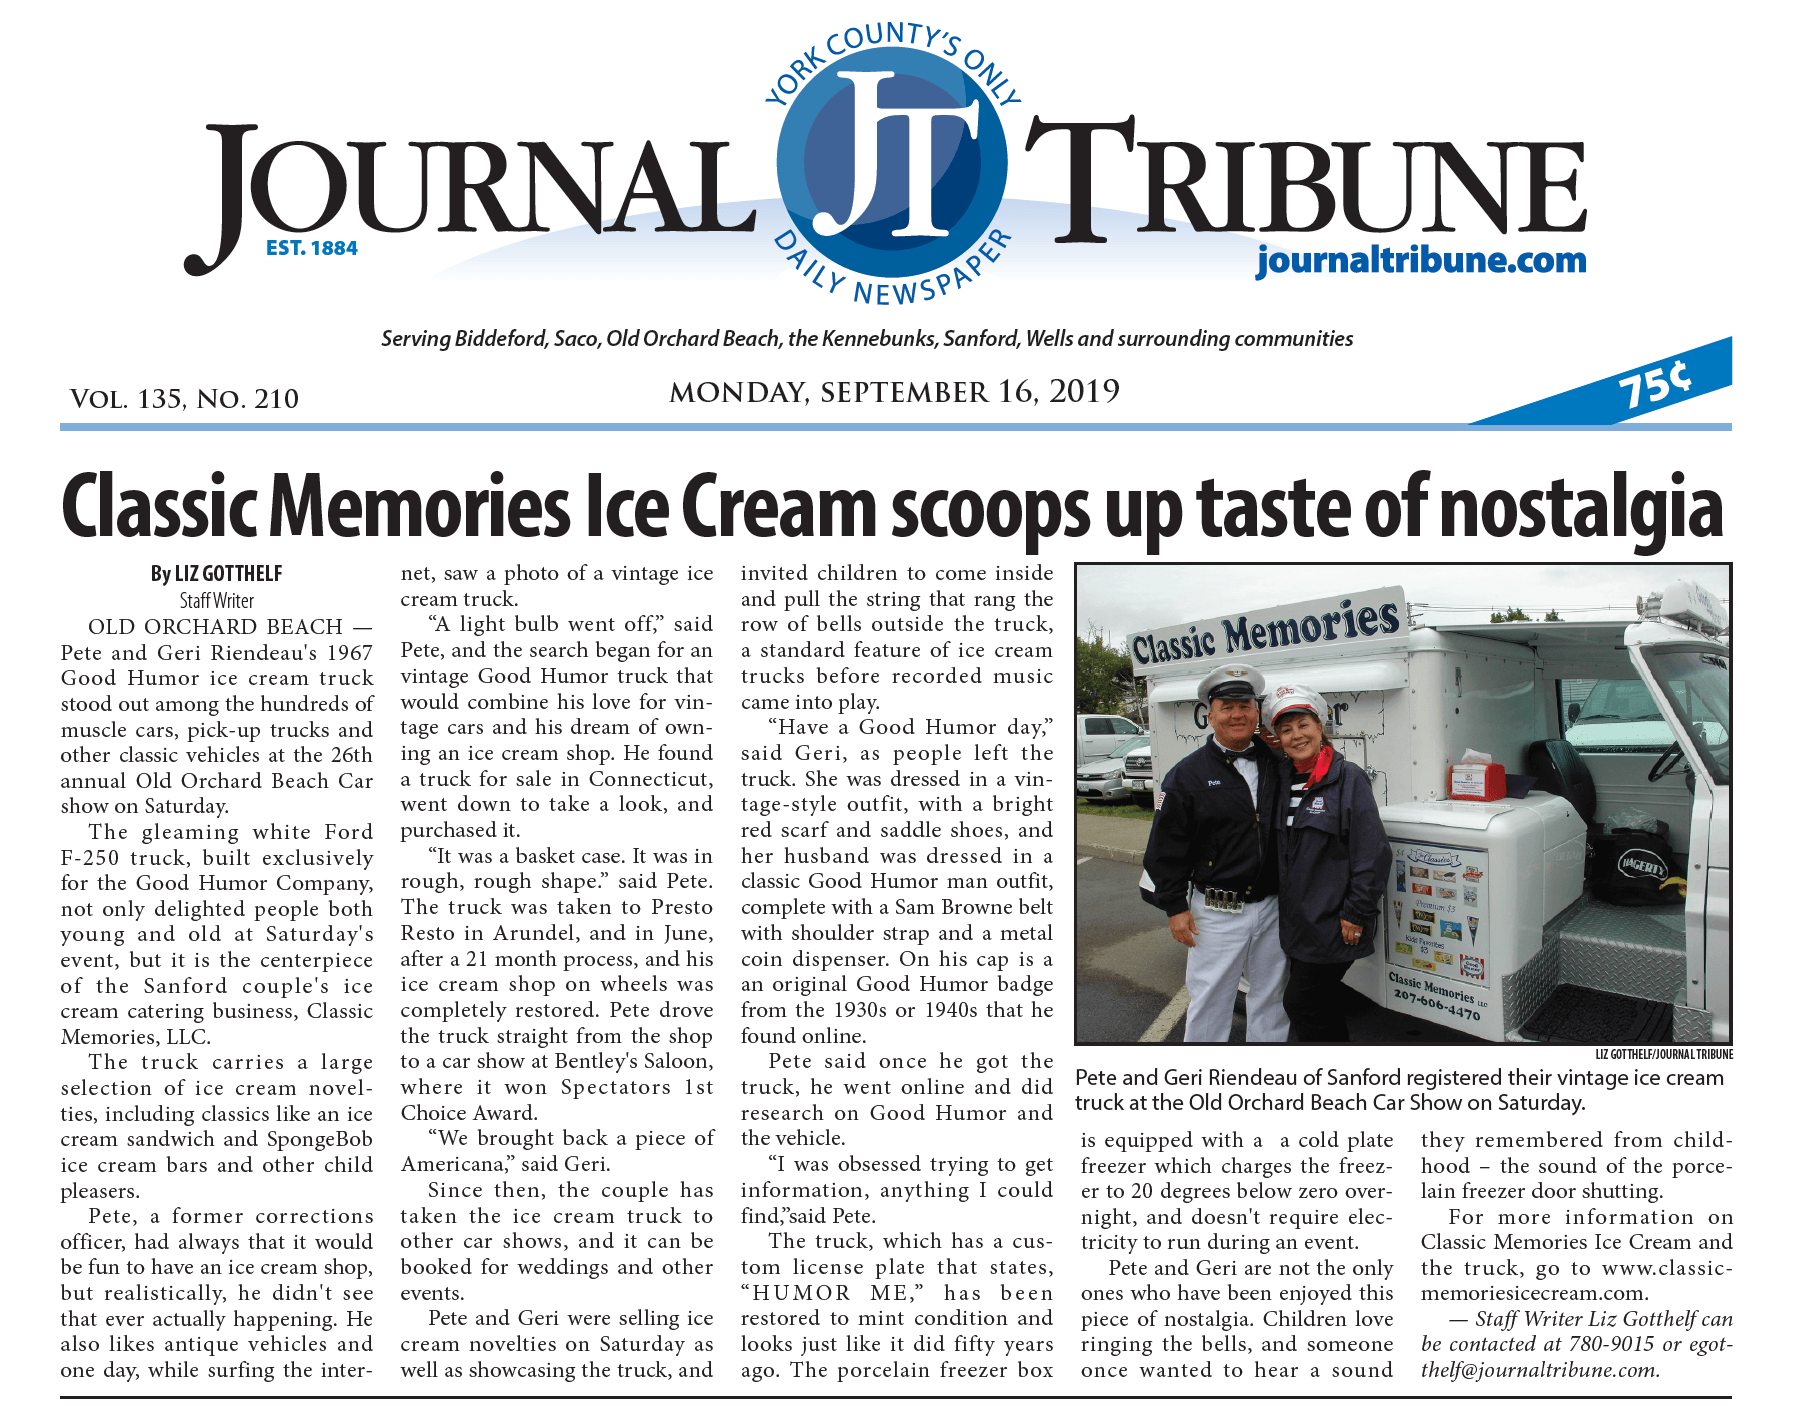 Classic Memories Ice Cream tribune feature article